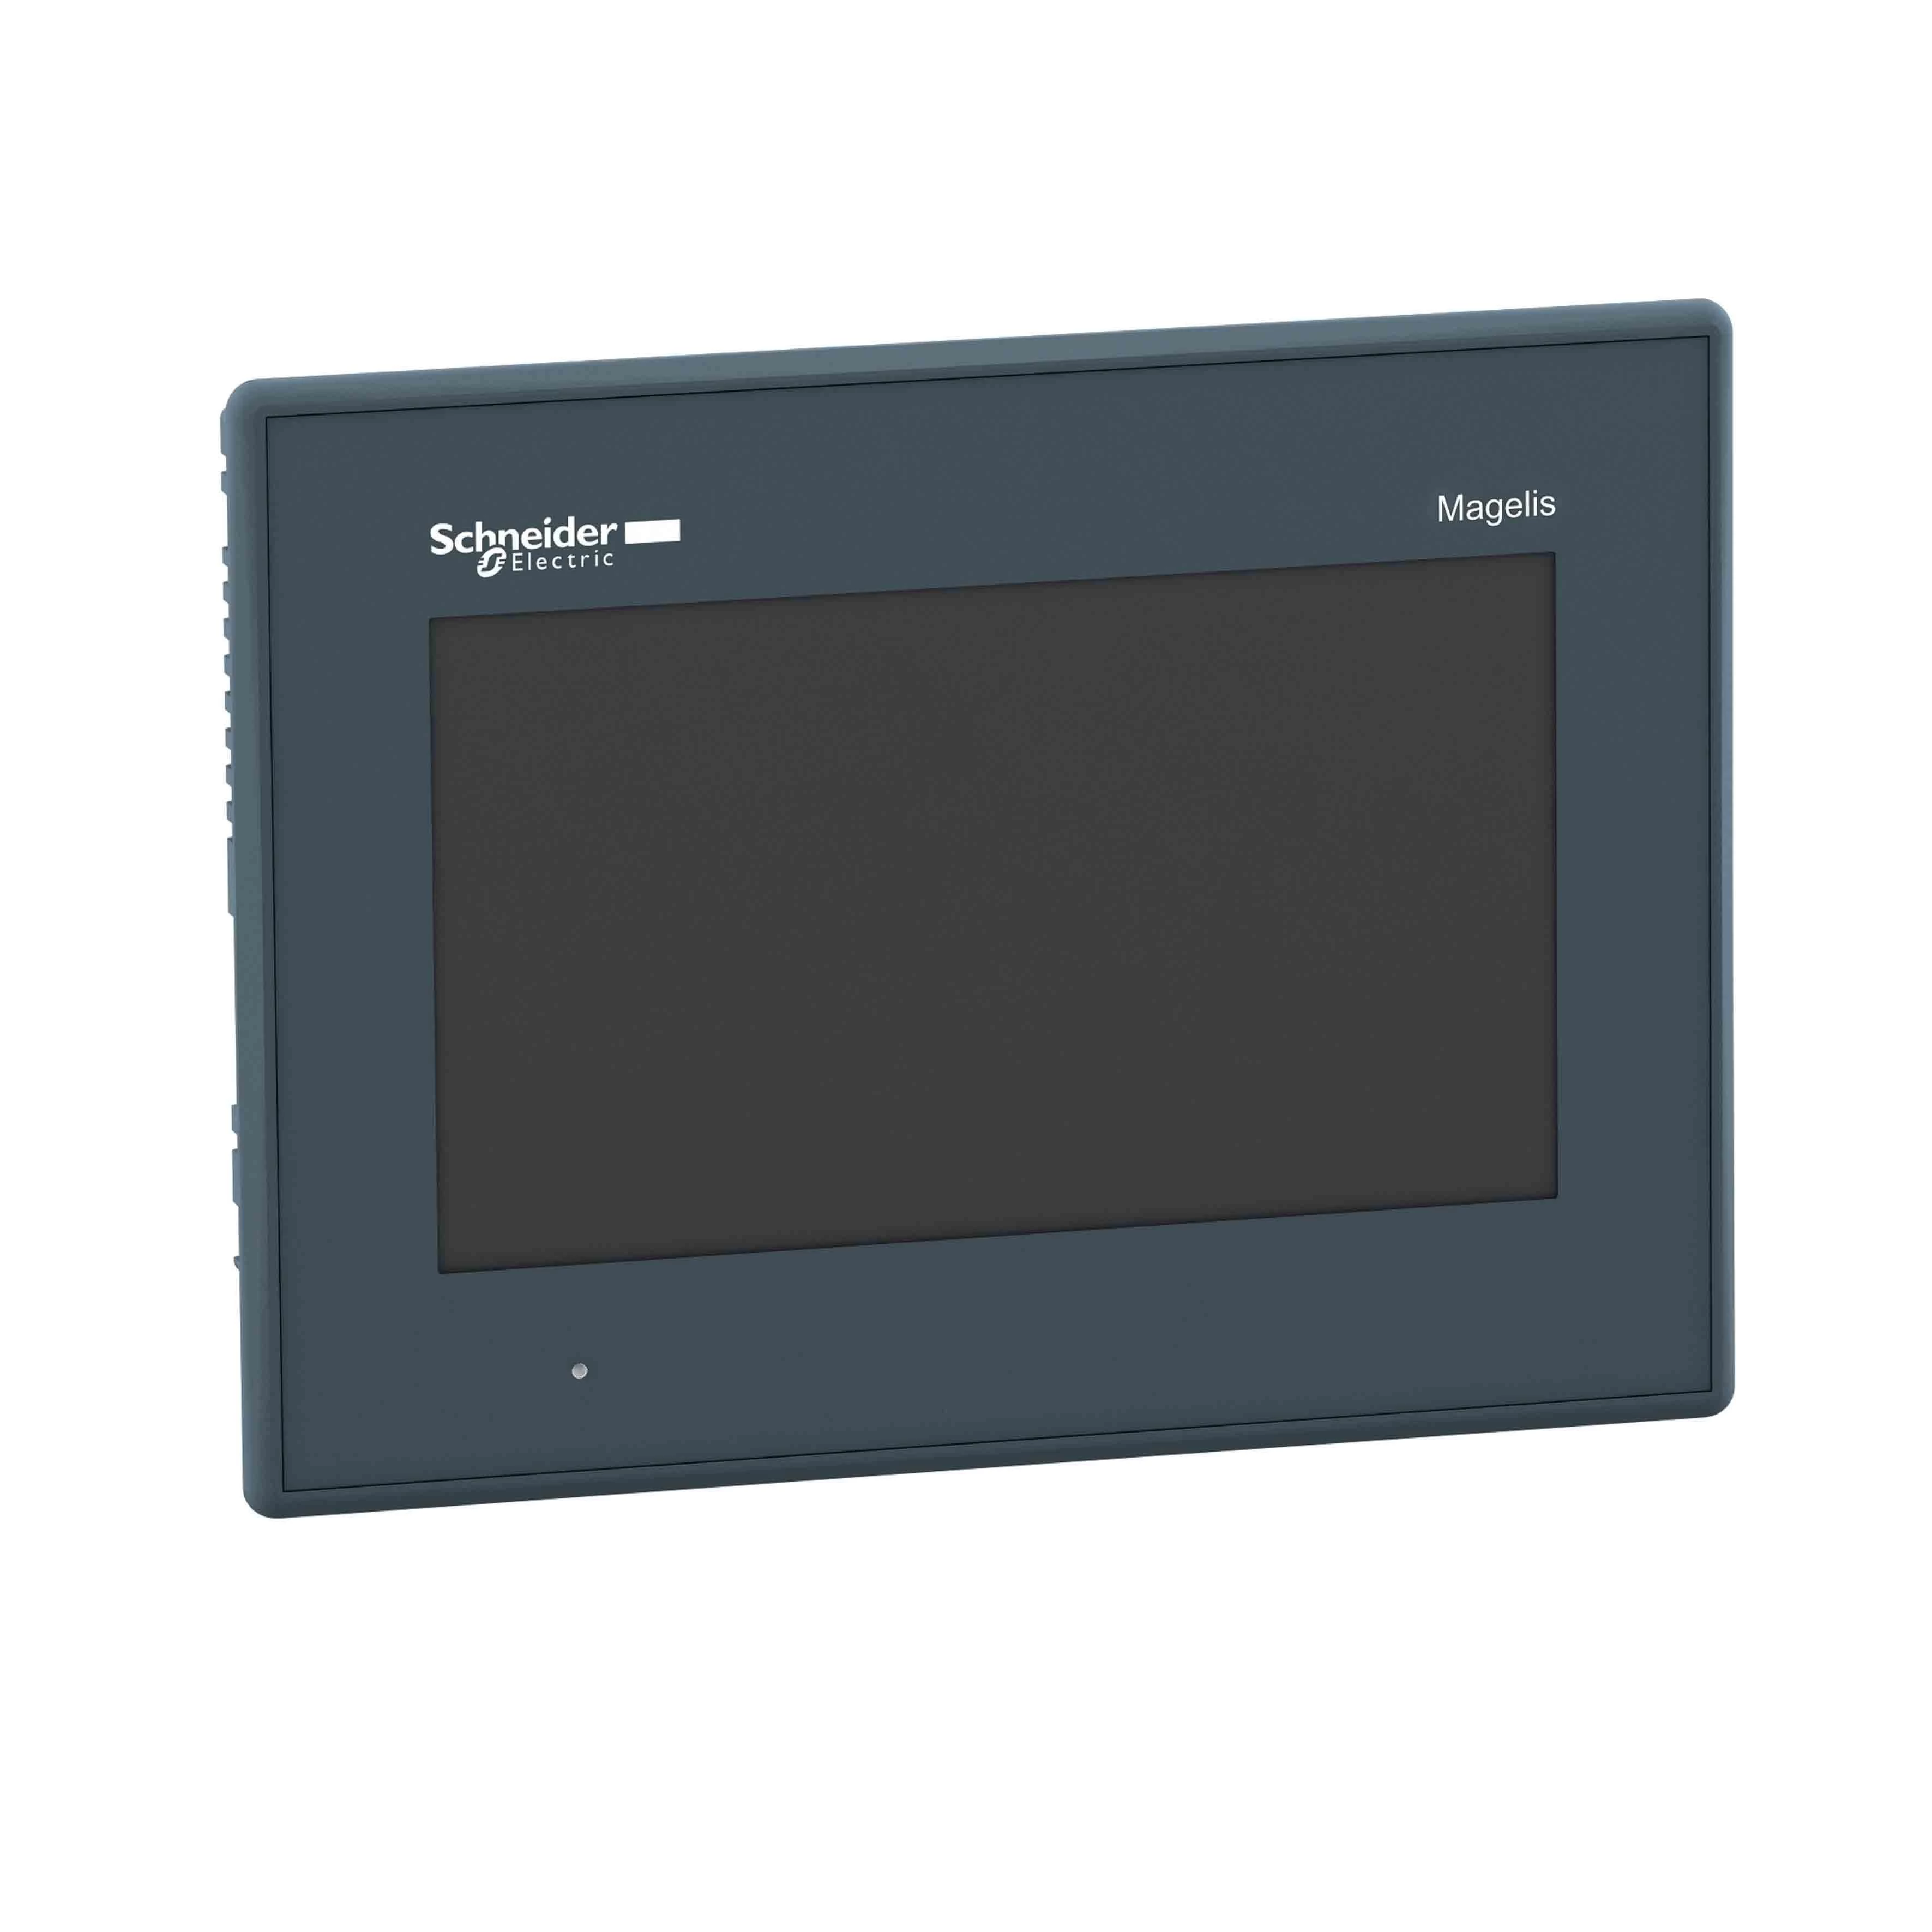  артикул HMIGXO3501 название SE Сенсорная панель GXO 7 TFT, 65К цветов, разъем USB